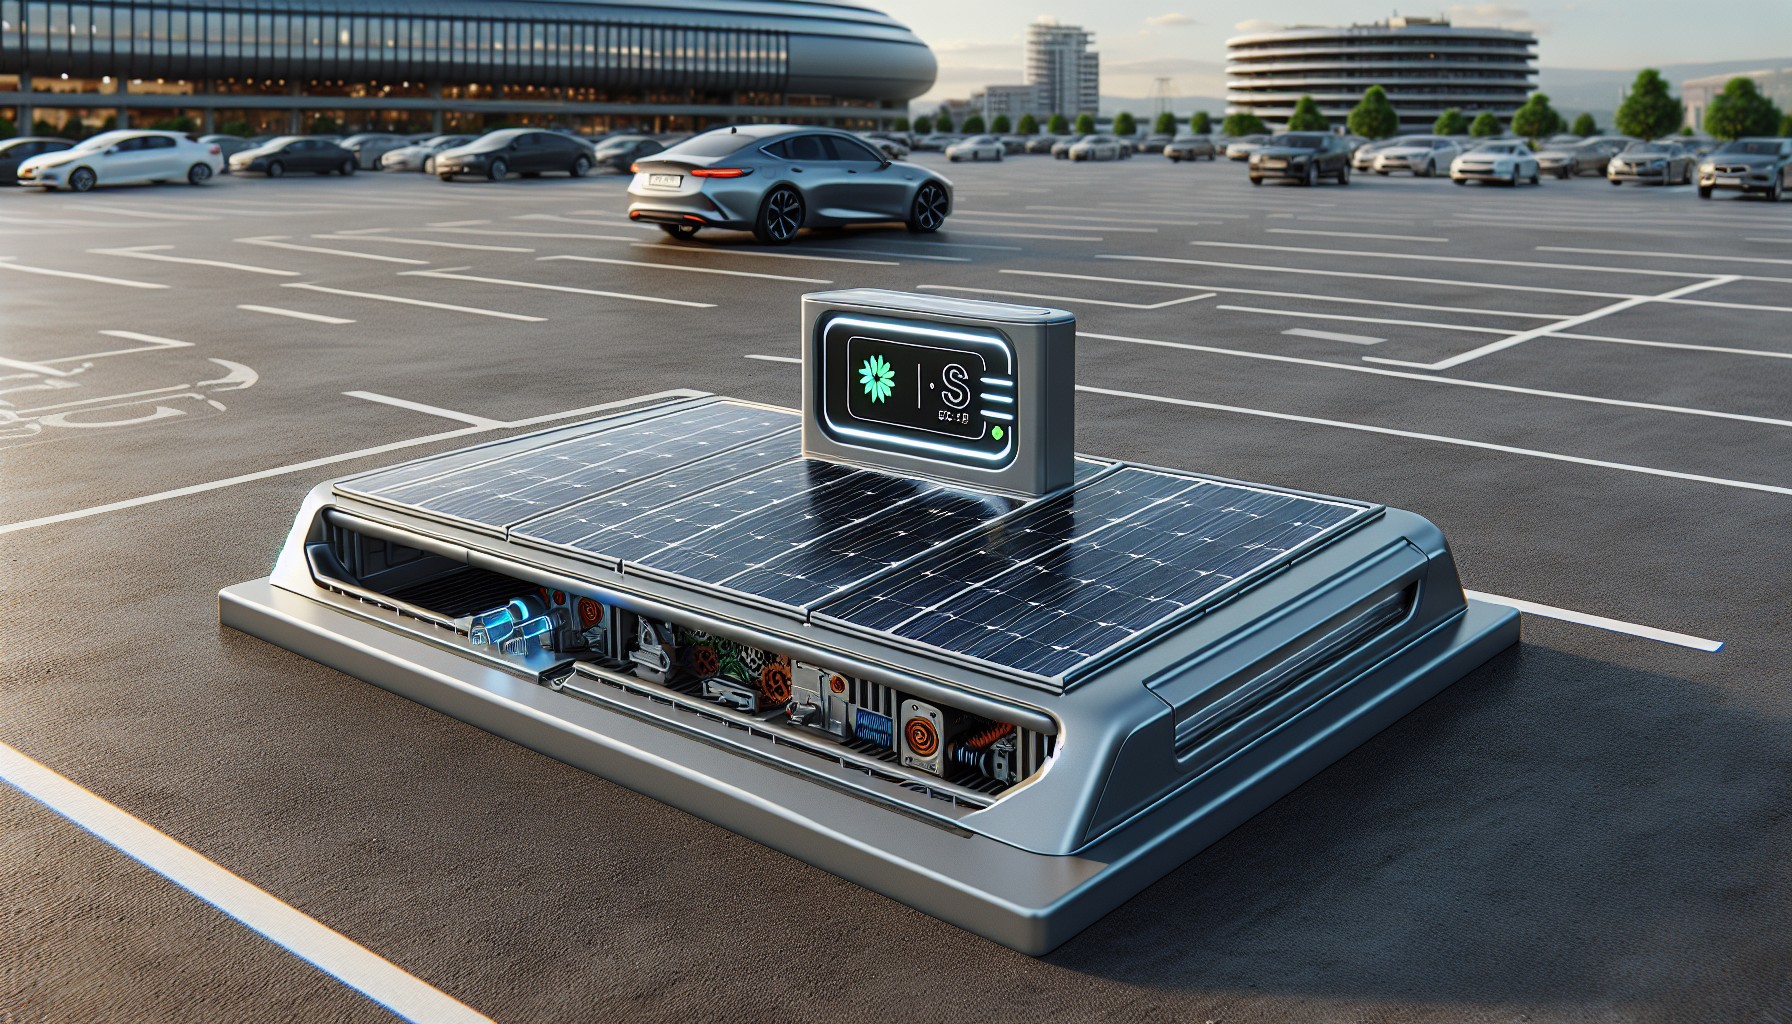 barriere de parking solaire ecologique et pratique